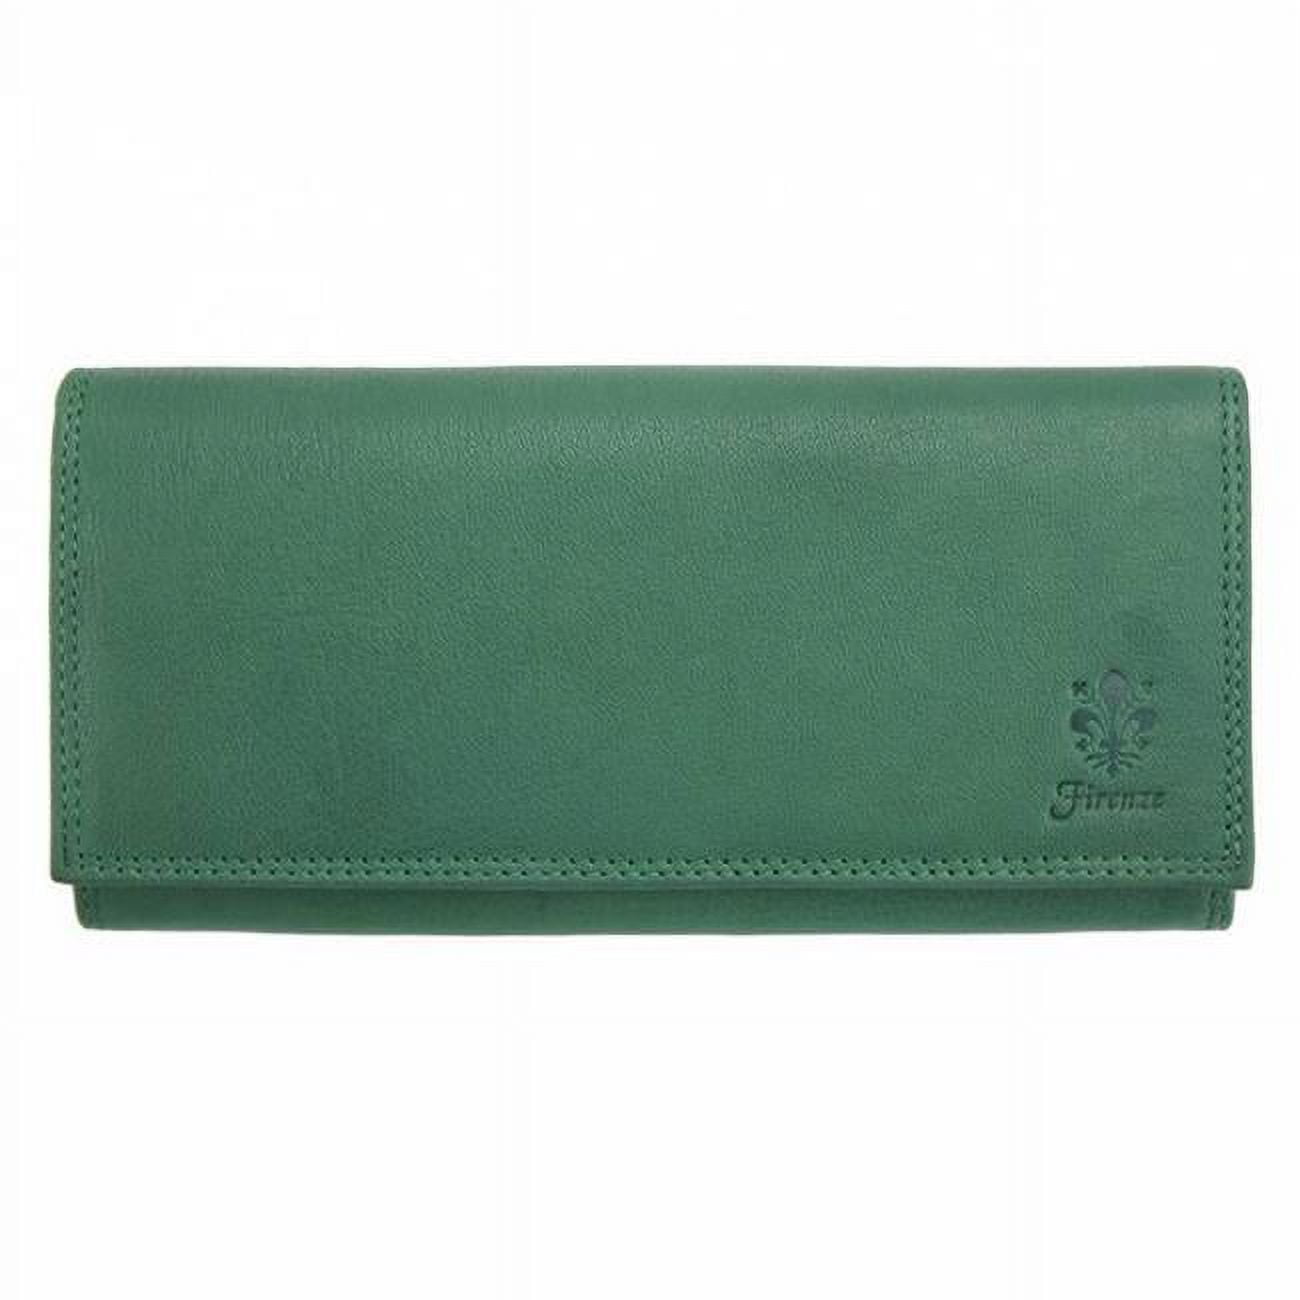 emilie wallet green